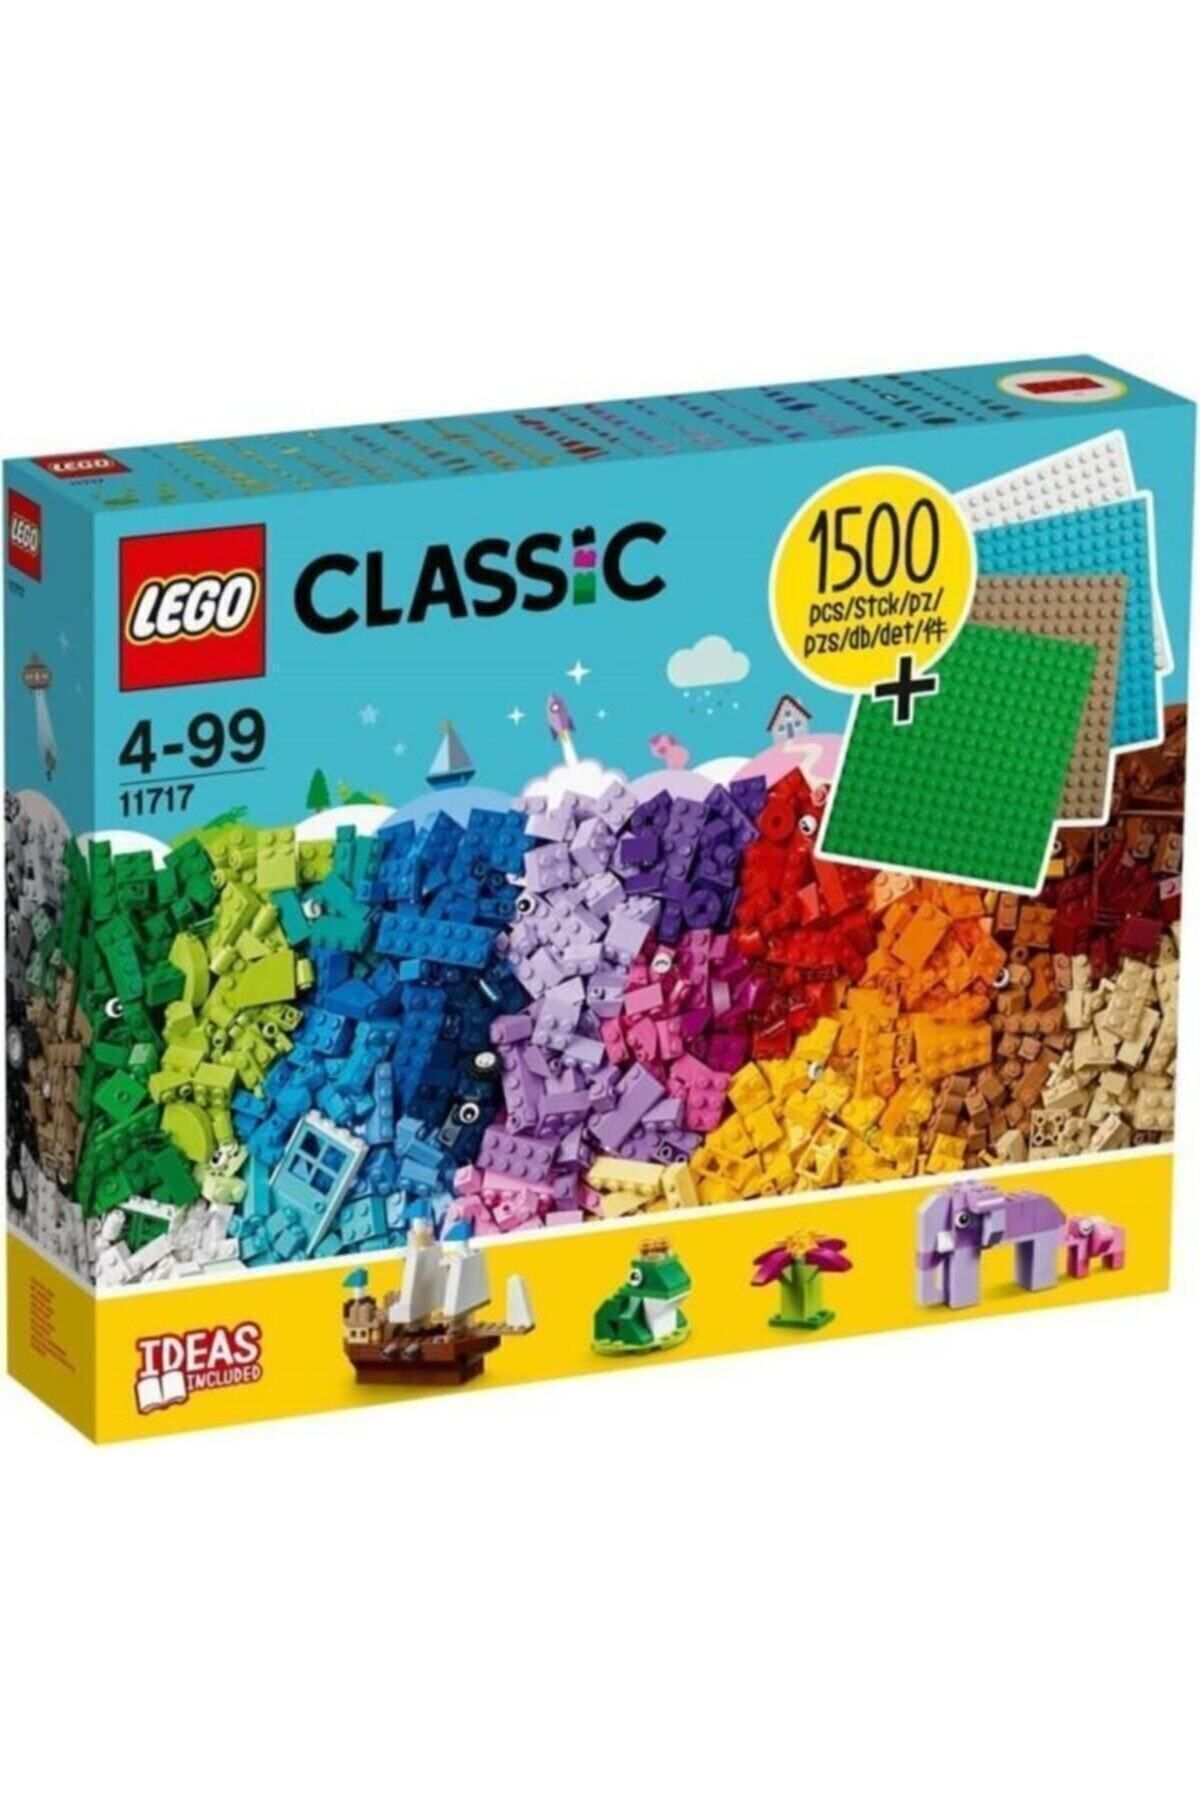 LEGO Classic 11717 Extra Large Brick Box + 4 Plates